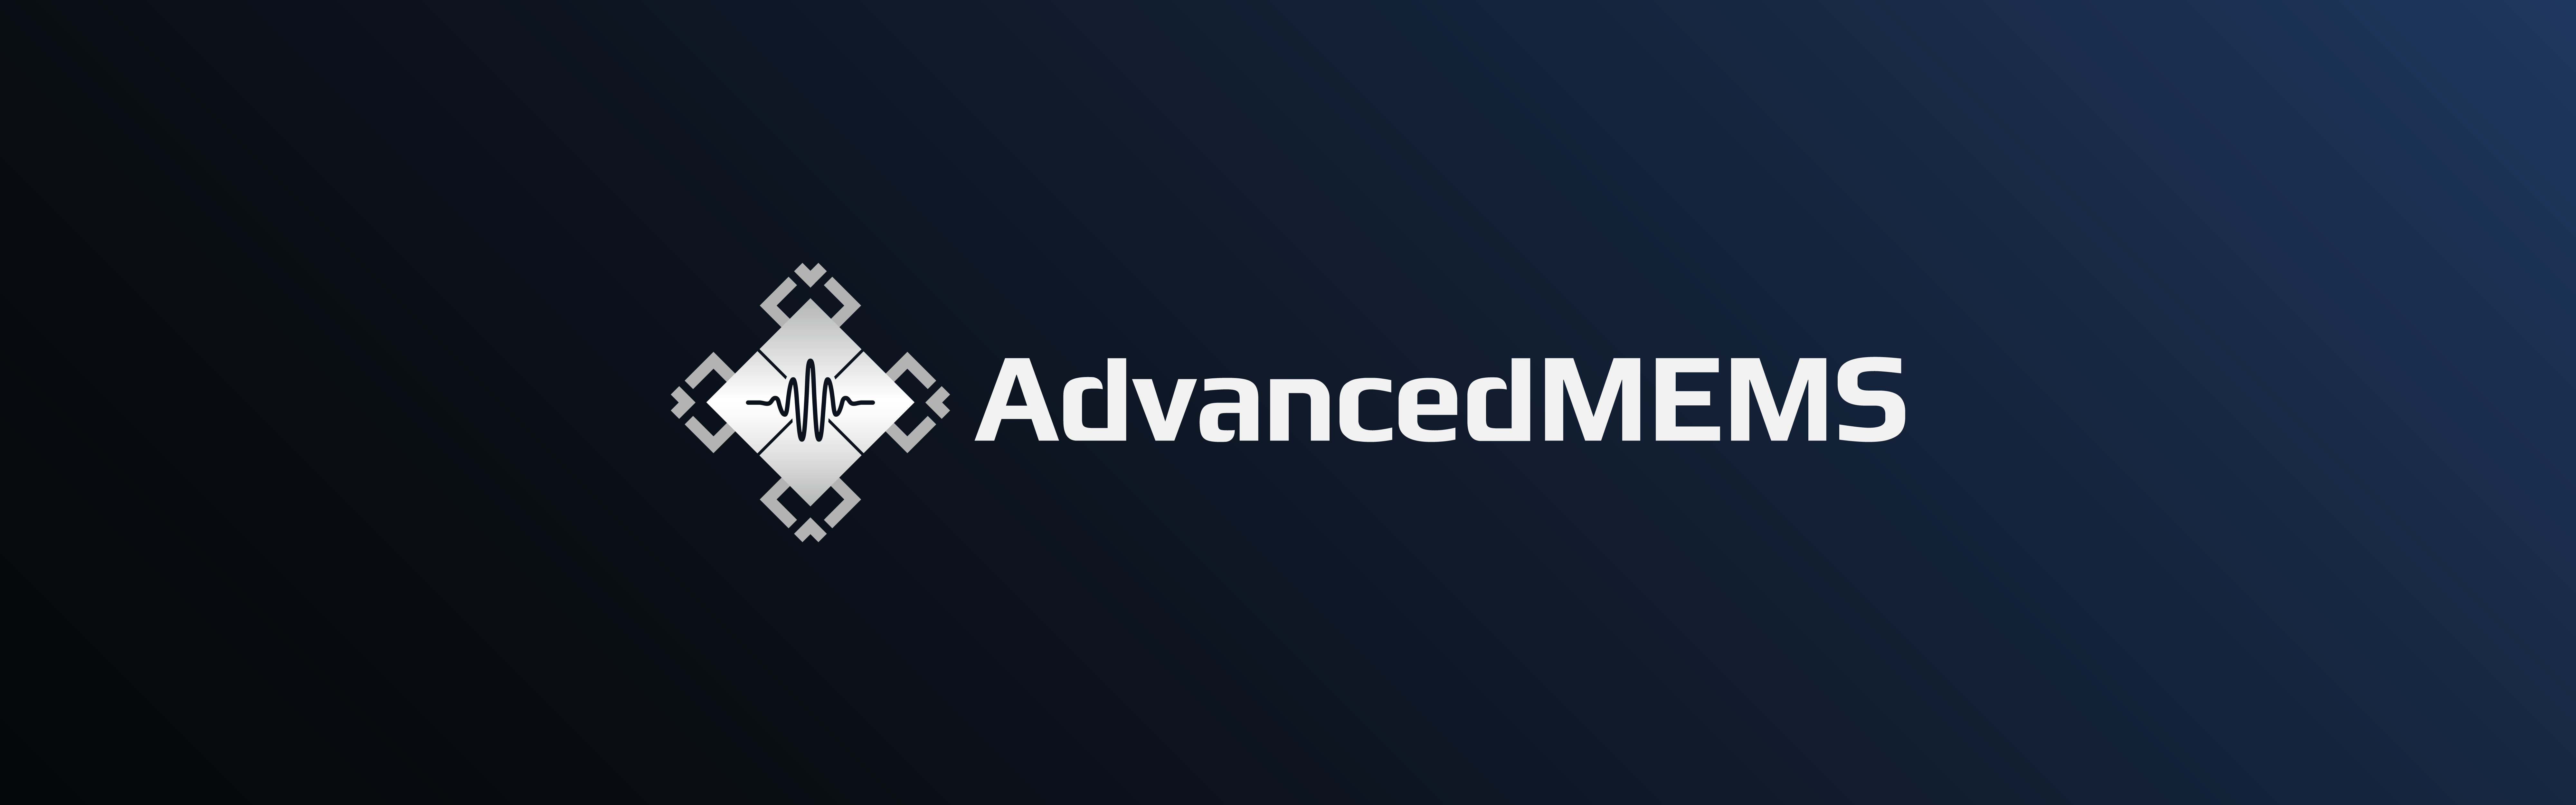 AdvancedMEMS logo design